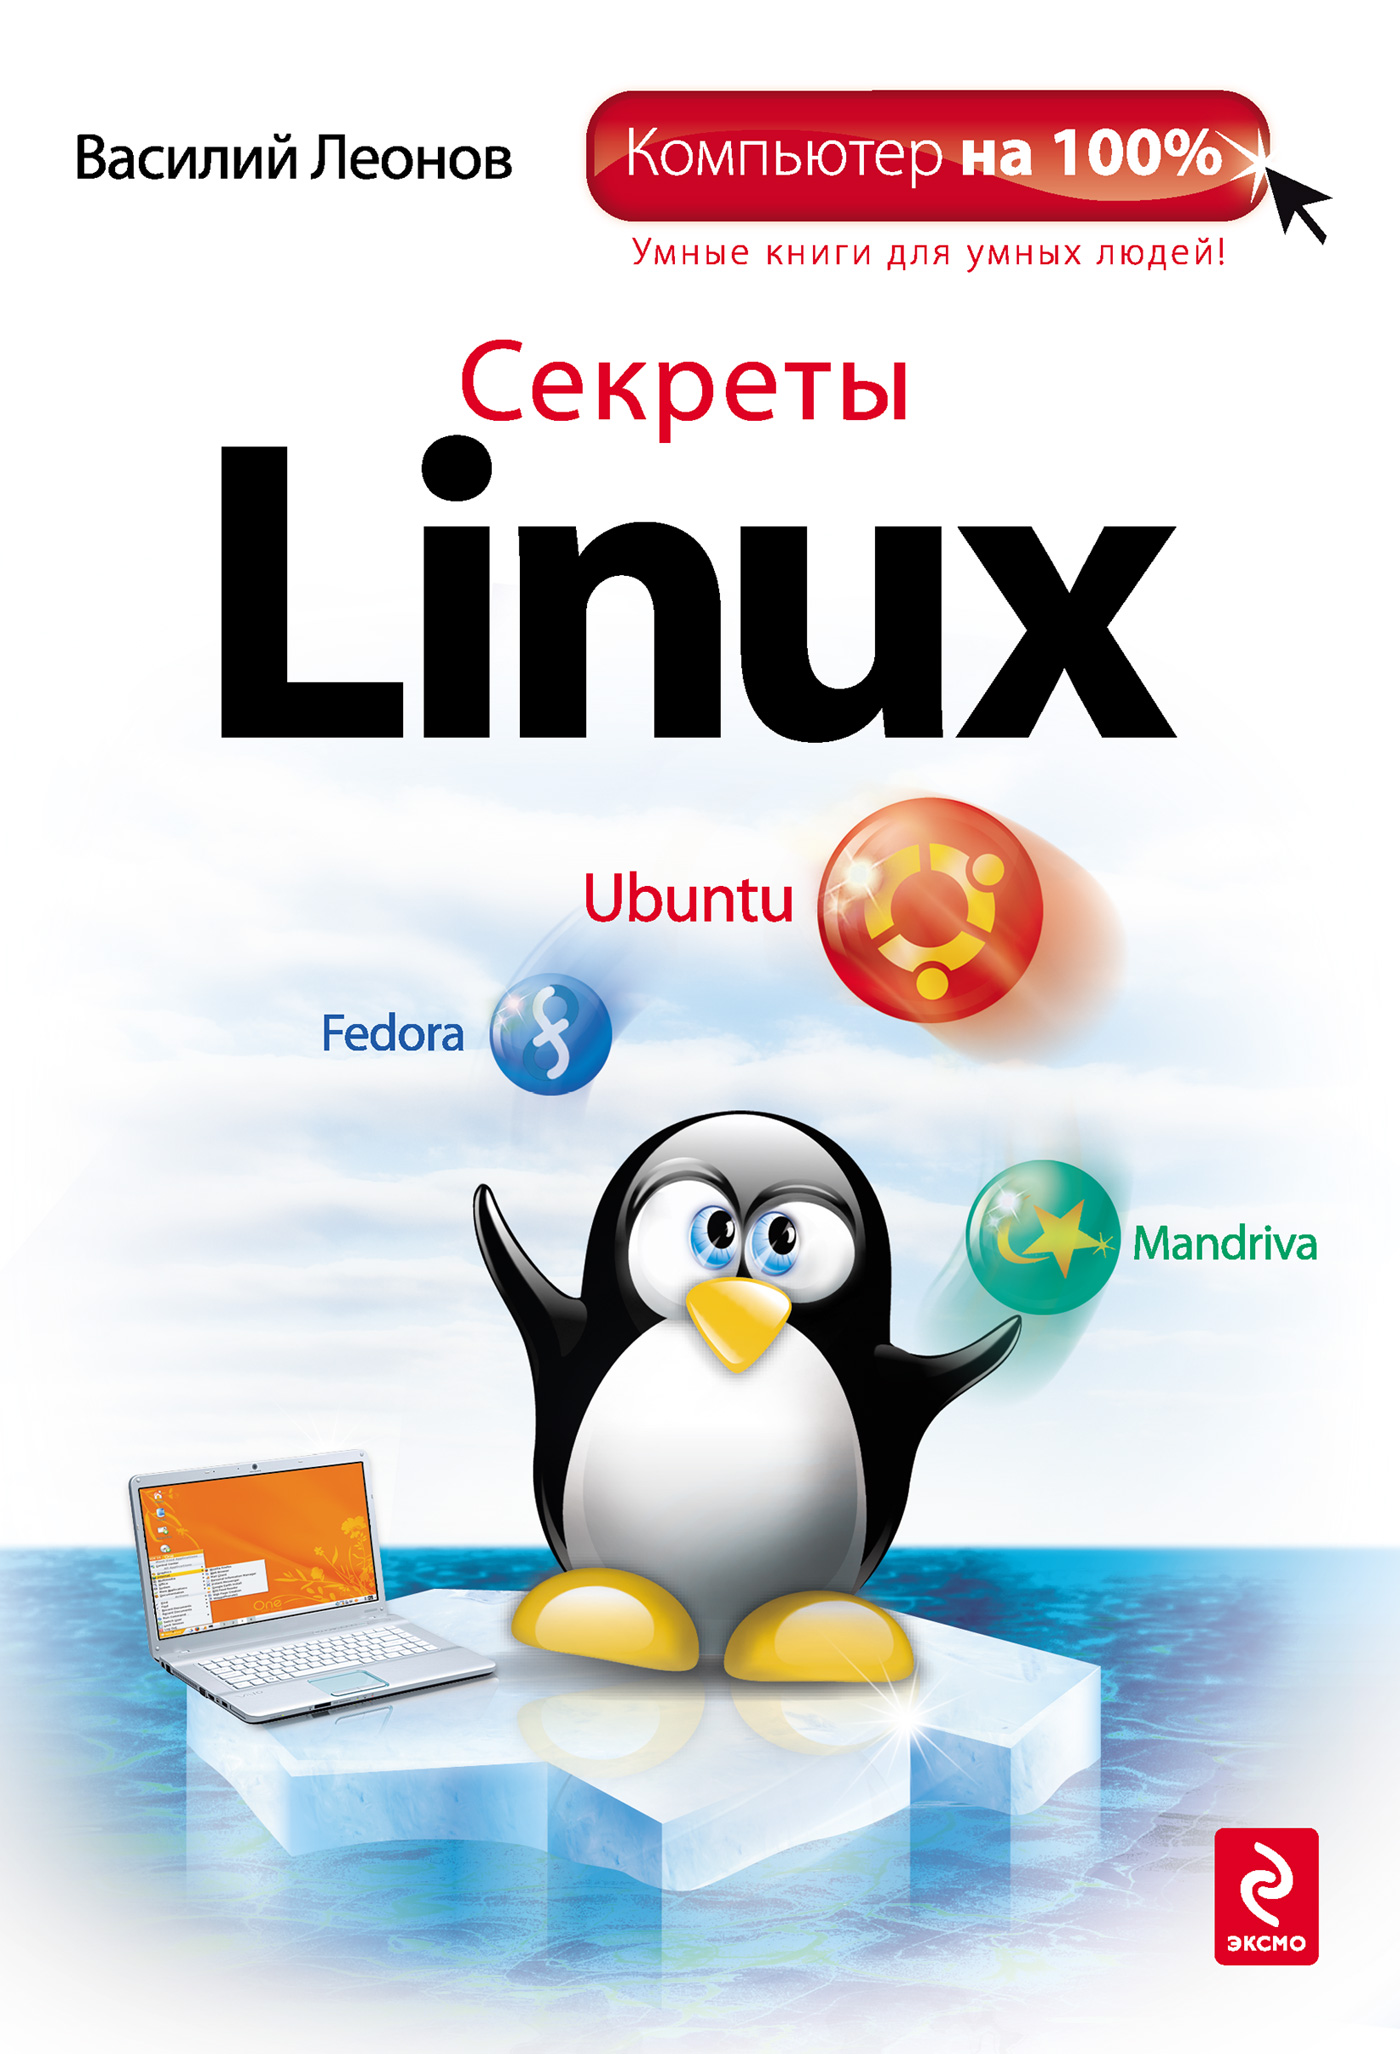 Книга  Секреты Linux созданная Василий Леонов может относится к жанру ОС и сети. Стоимость электронной книги Секреты Linux с идентификатором 2901625 составляет 179.00 руб.